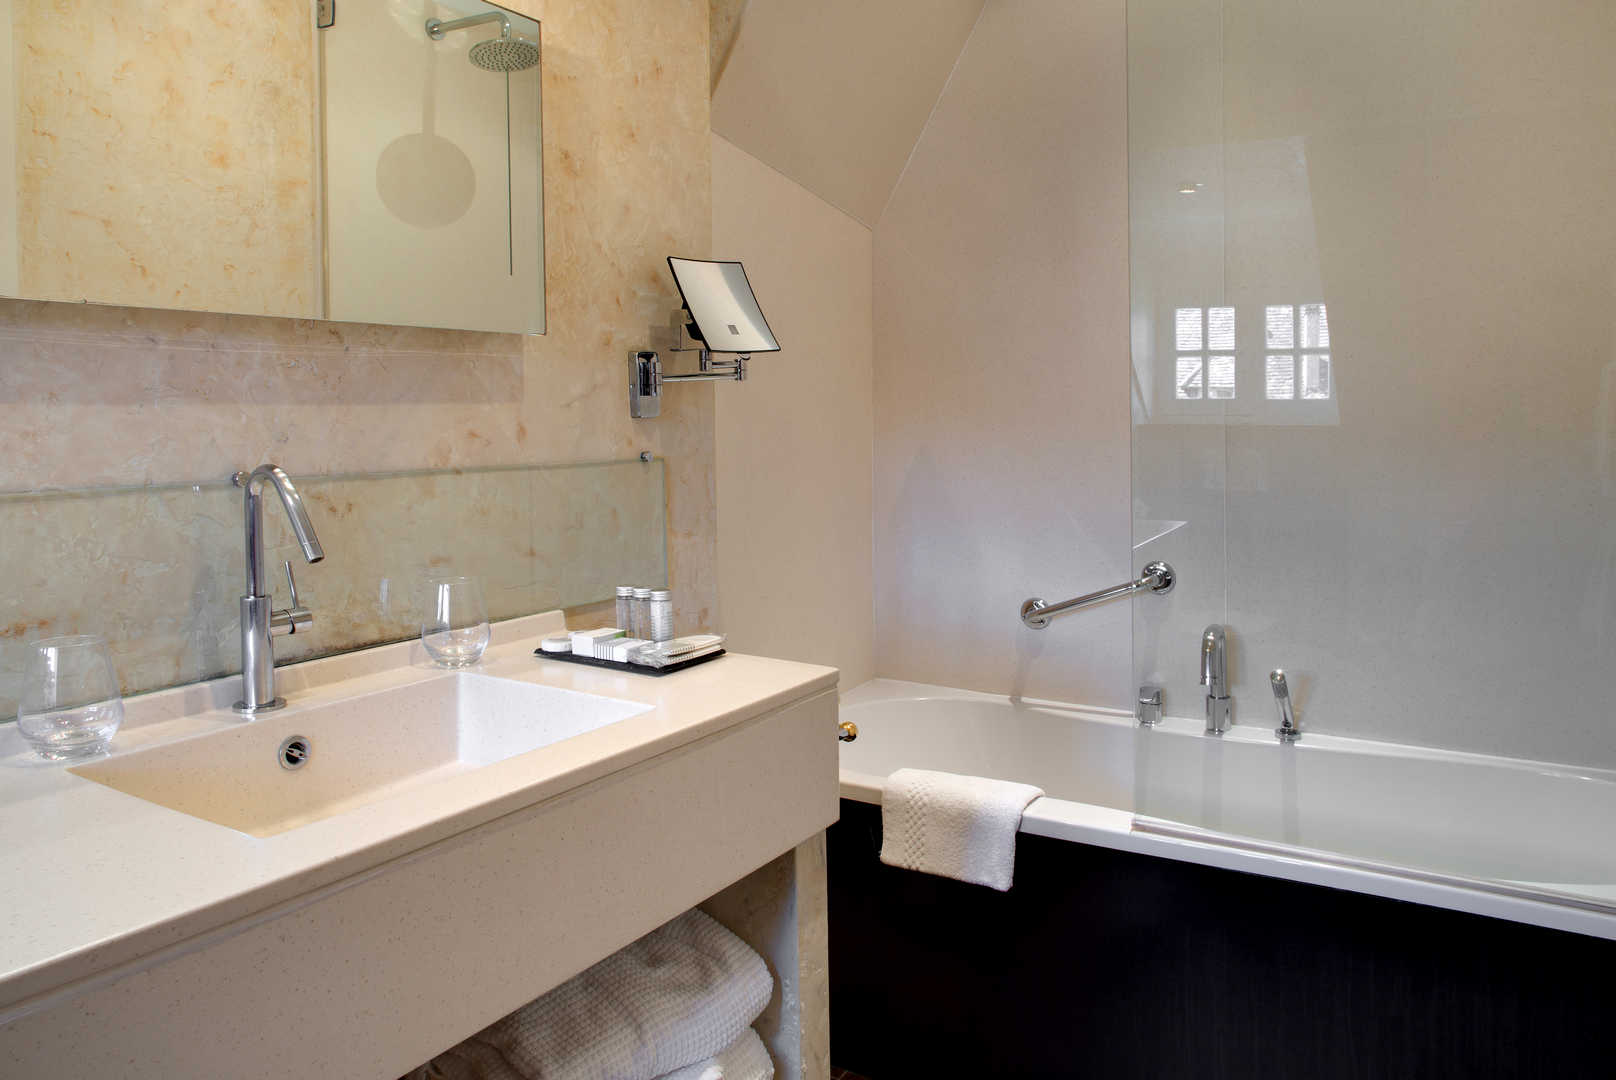 Vue intérieure d'une salle de bain avec baignoire dans l'hôtel de charme en Dordogne, l'Esplanade